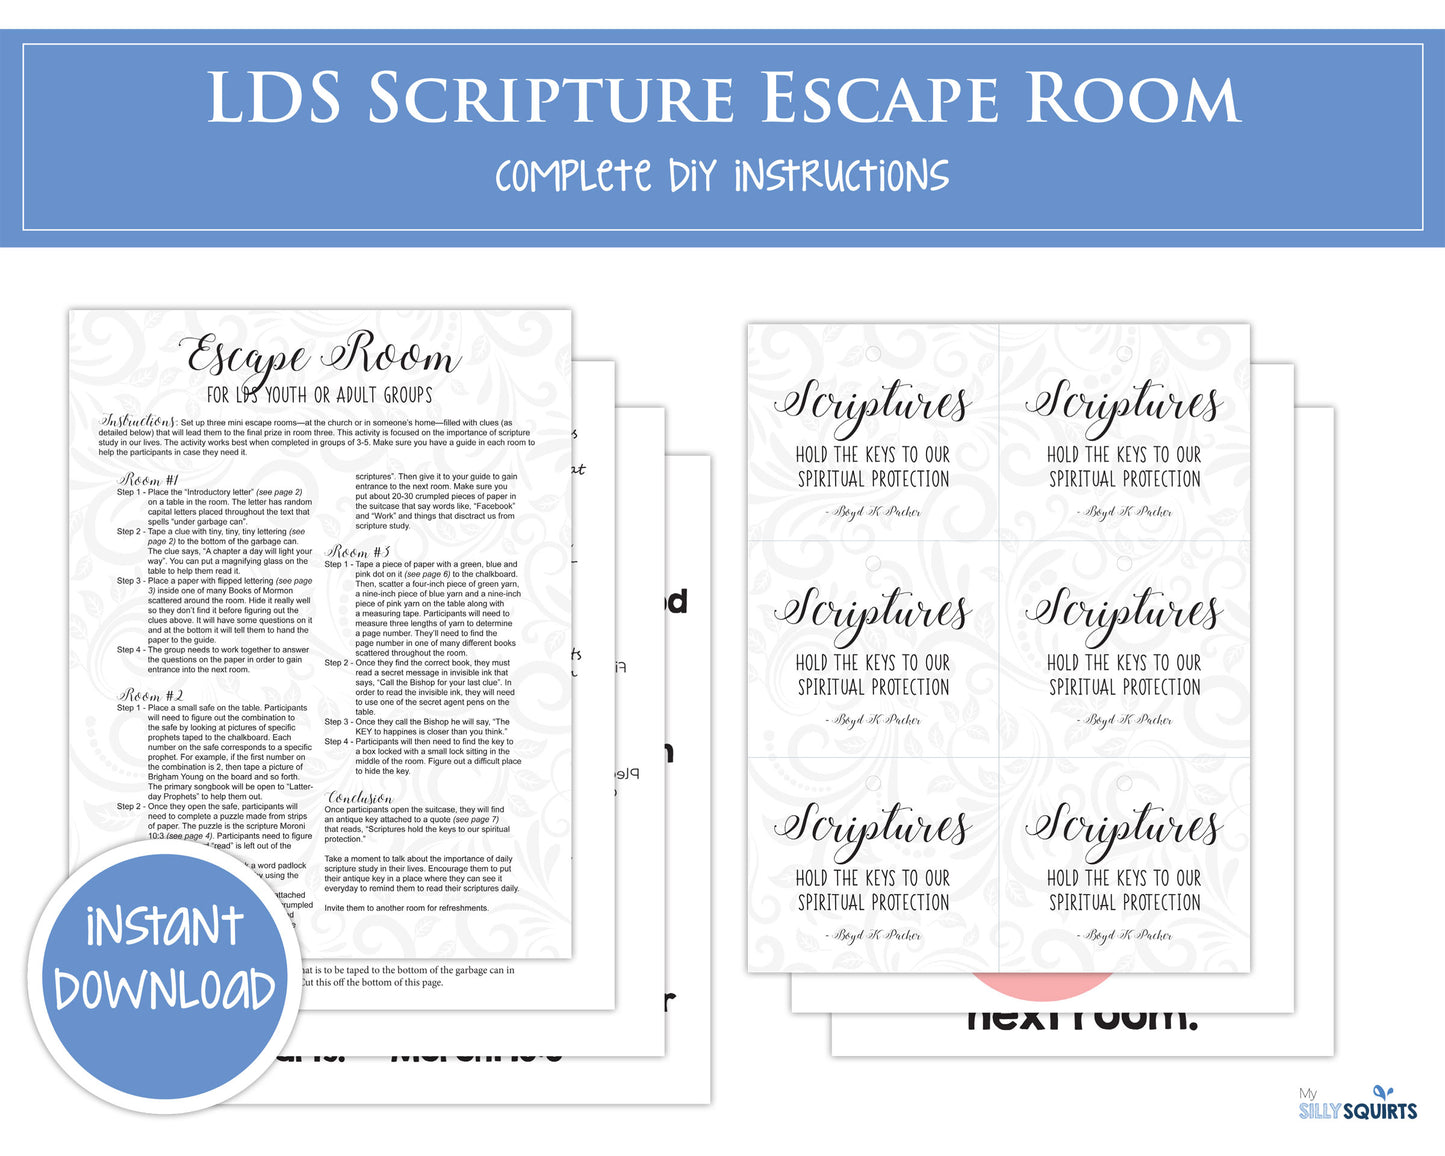 LDS Scripture Escape Room